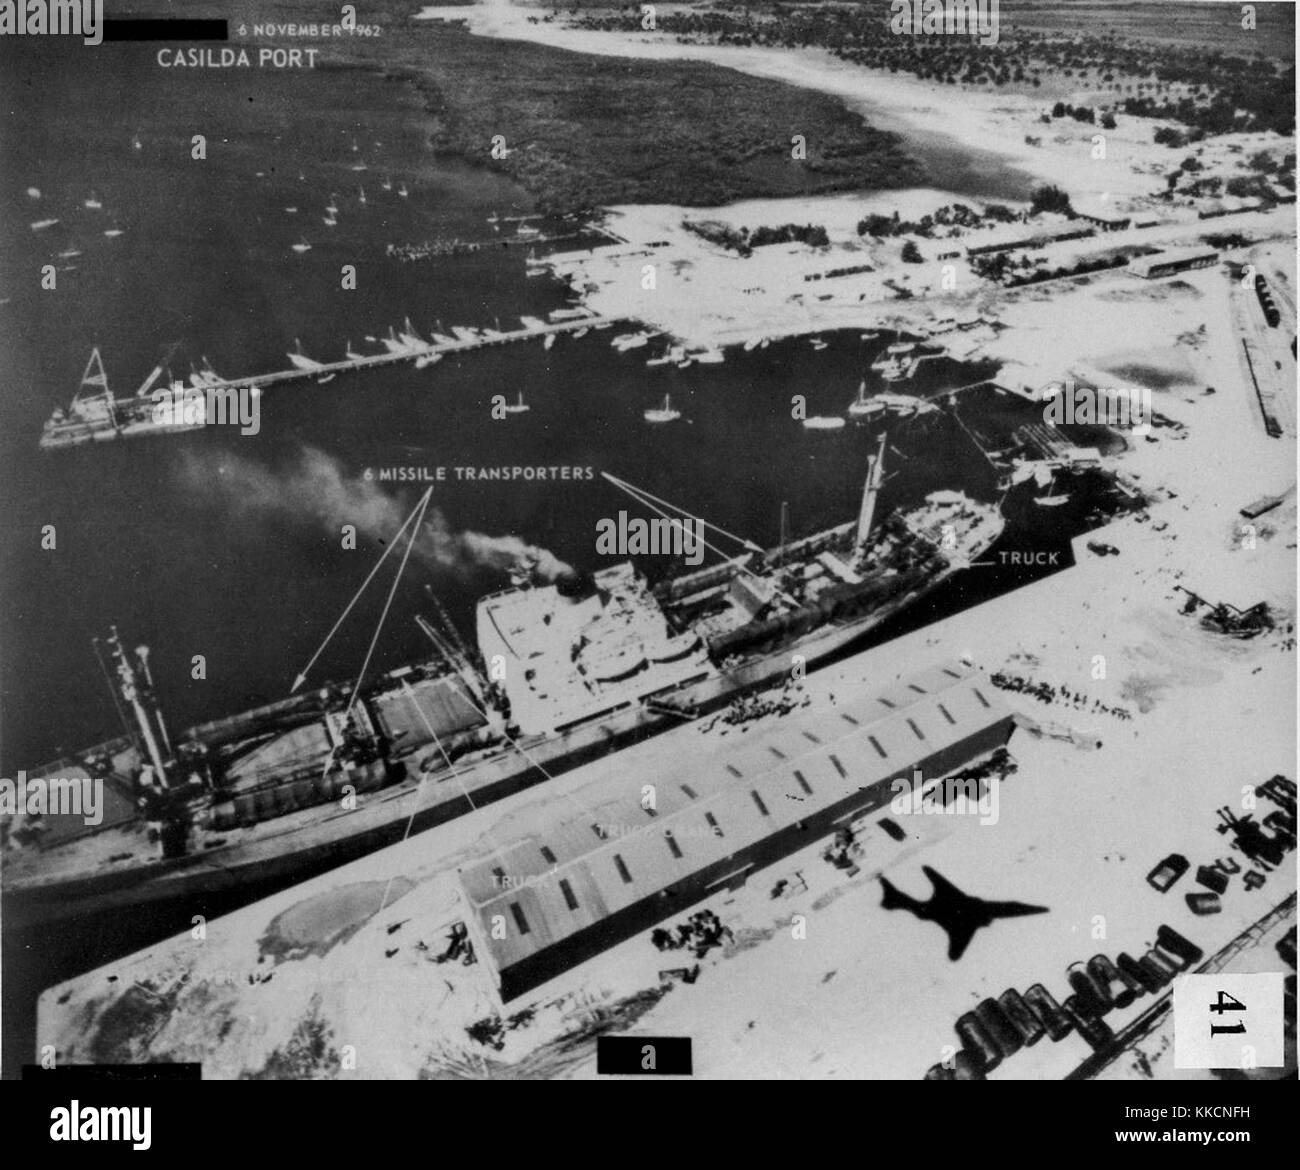 Sowjetische Personal und sechs Raketen Transporter verladen auf Schiff Transport bei Casilda port in Kuba, in diesem November 6, 1962 Foto von einem Air Force RF-101 Voodoo genommen. Hinweis Das Flugzeug Silhouette in der rechten unteren Ecke. Stockfoto